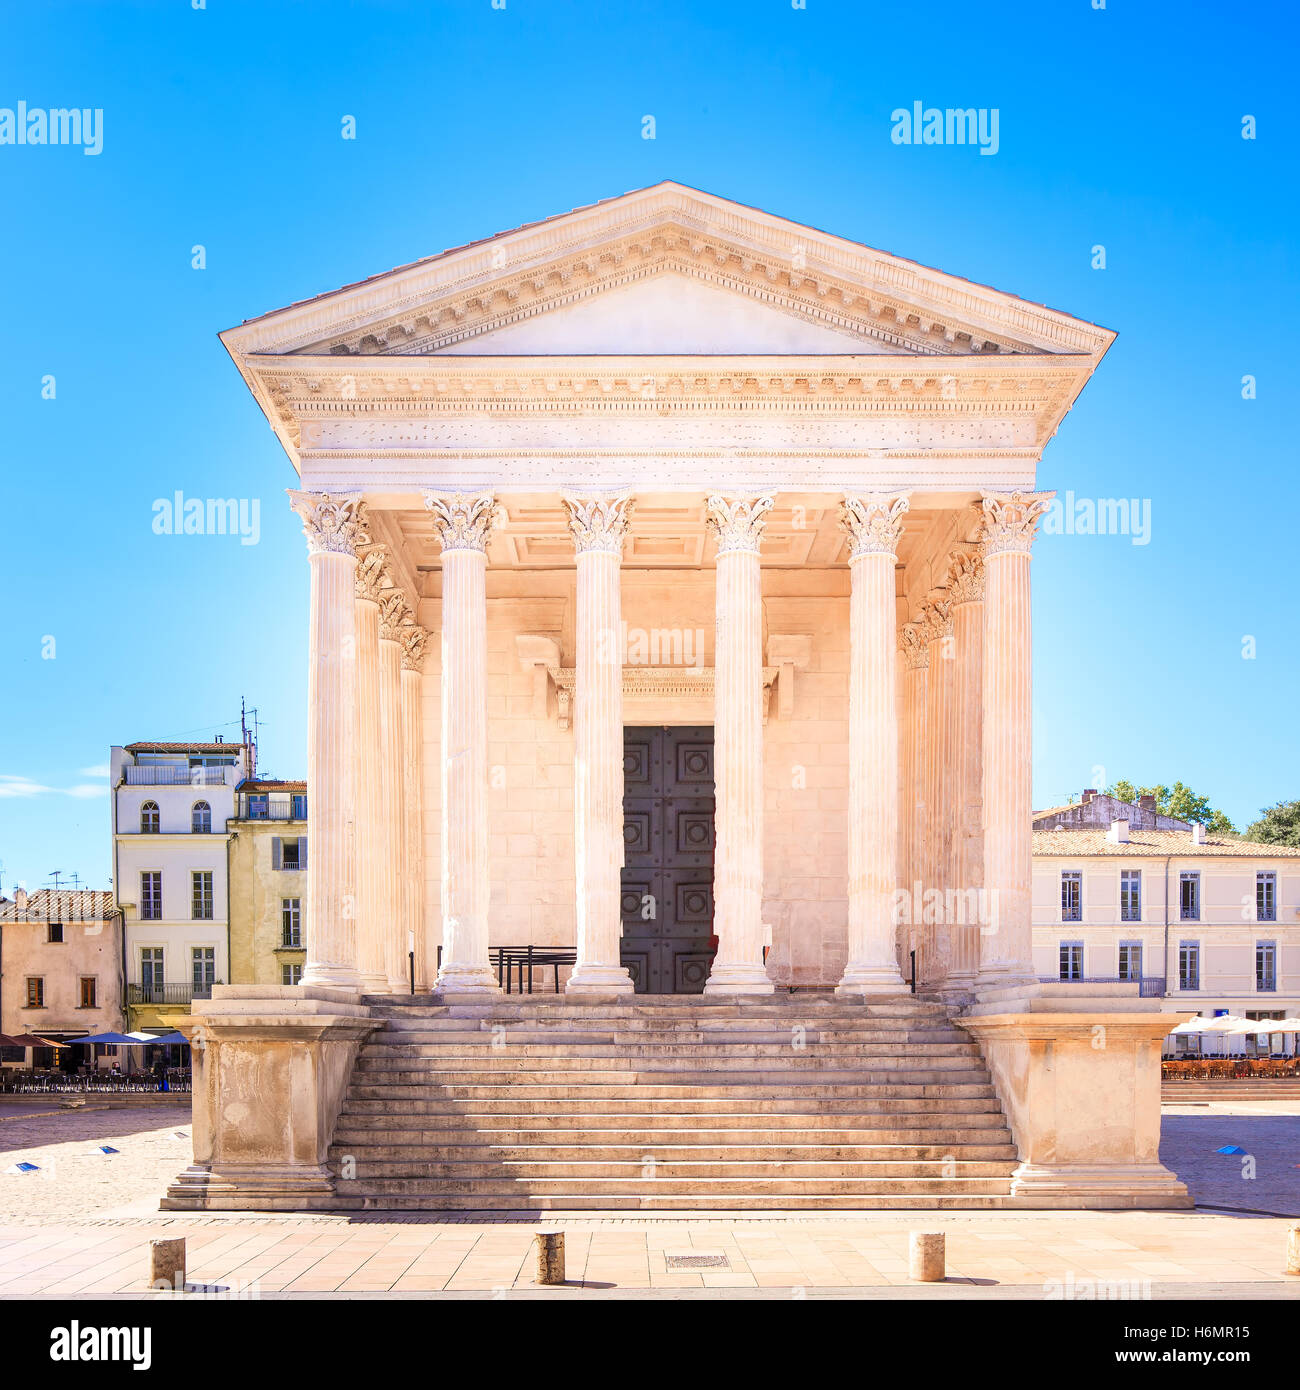 La Maison Carree temple romain architecture colonne. Ancien bâtiment de l'Empire romain. Nimes, Languedoc Roussillon, France, Europe Banque D'Images